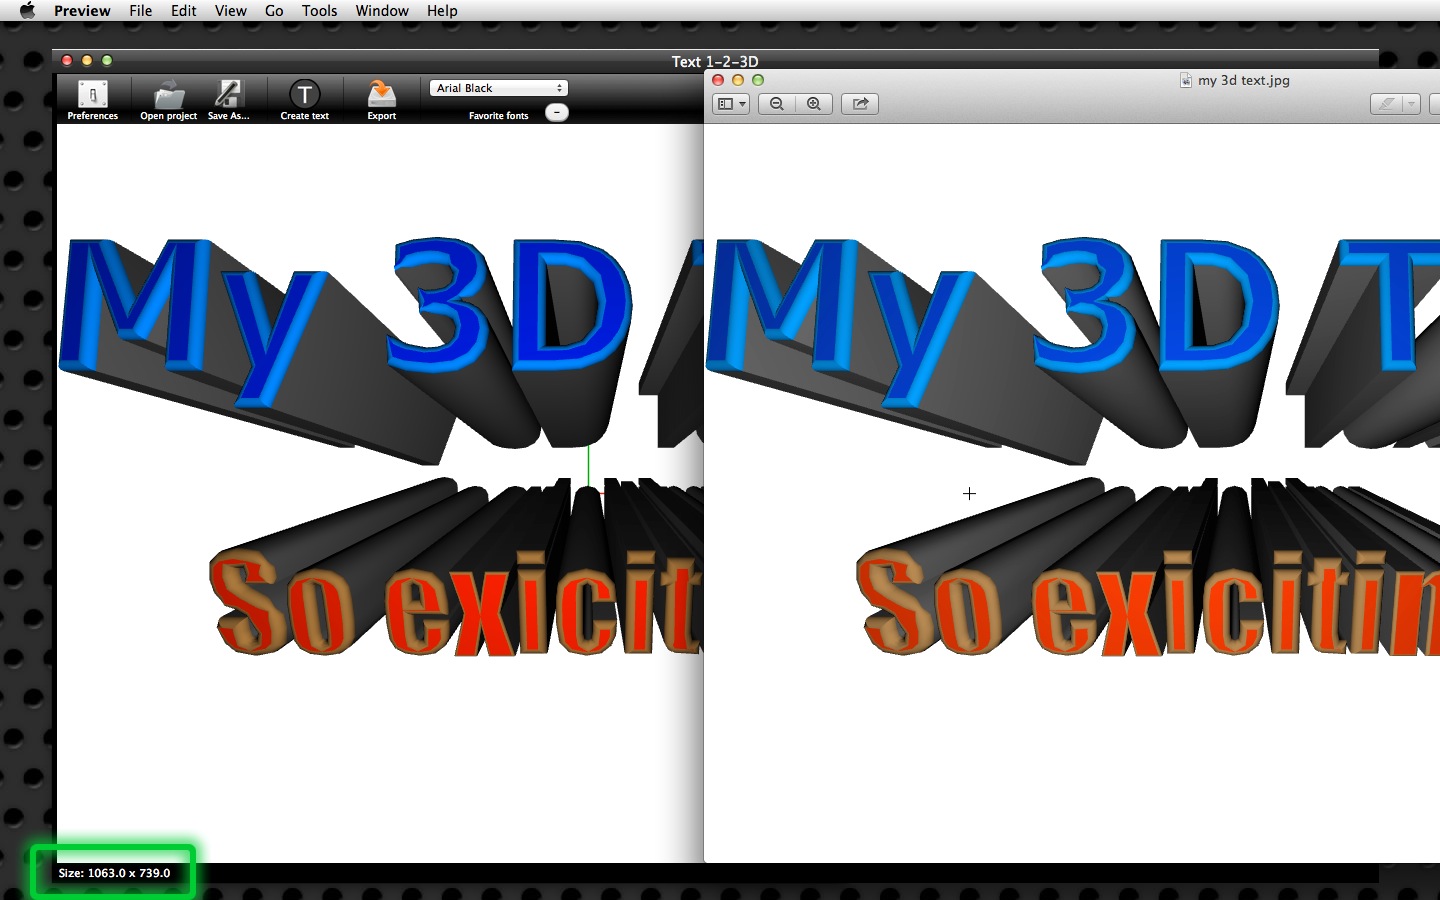 Mac software Text 1-2-3D